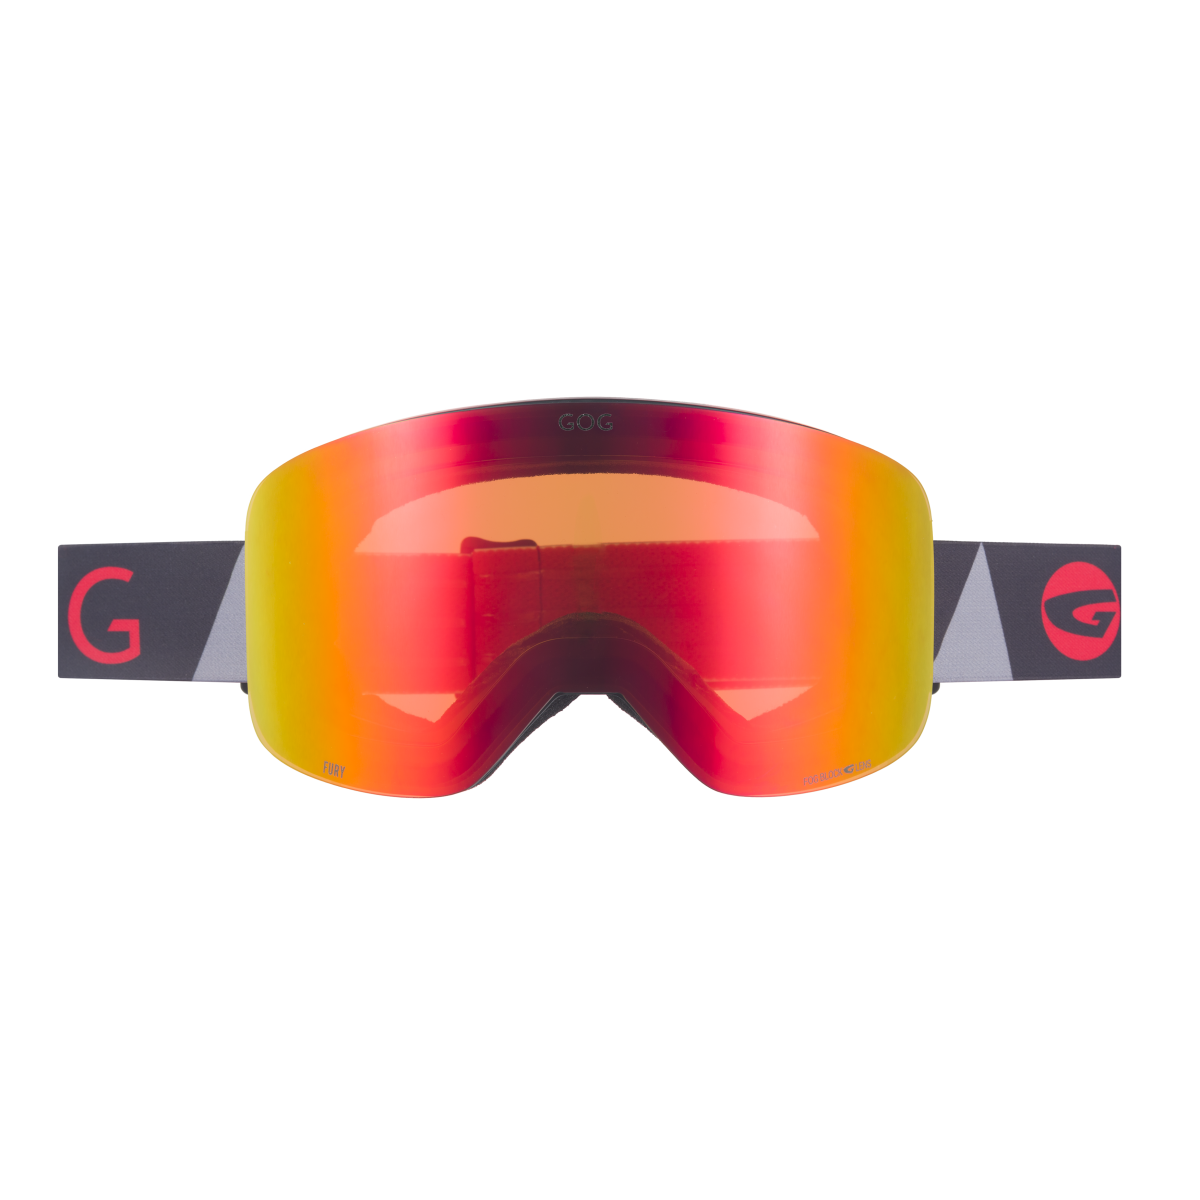 Ски очила H610-2 Fury magnetic + допълнителна плака GOG - изглед 2